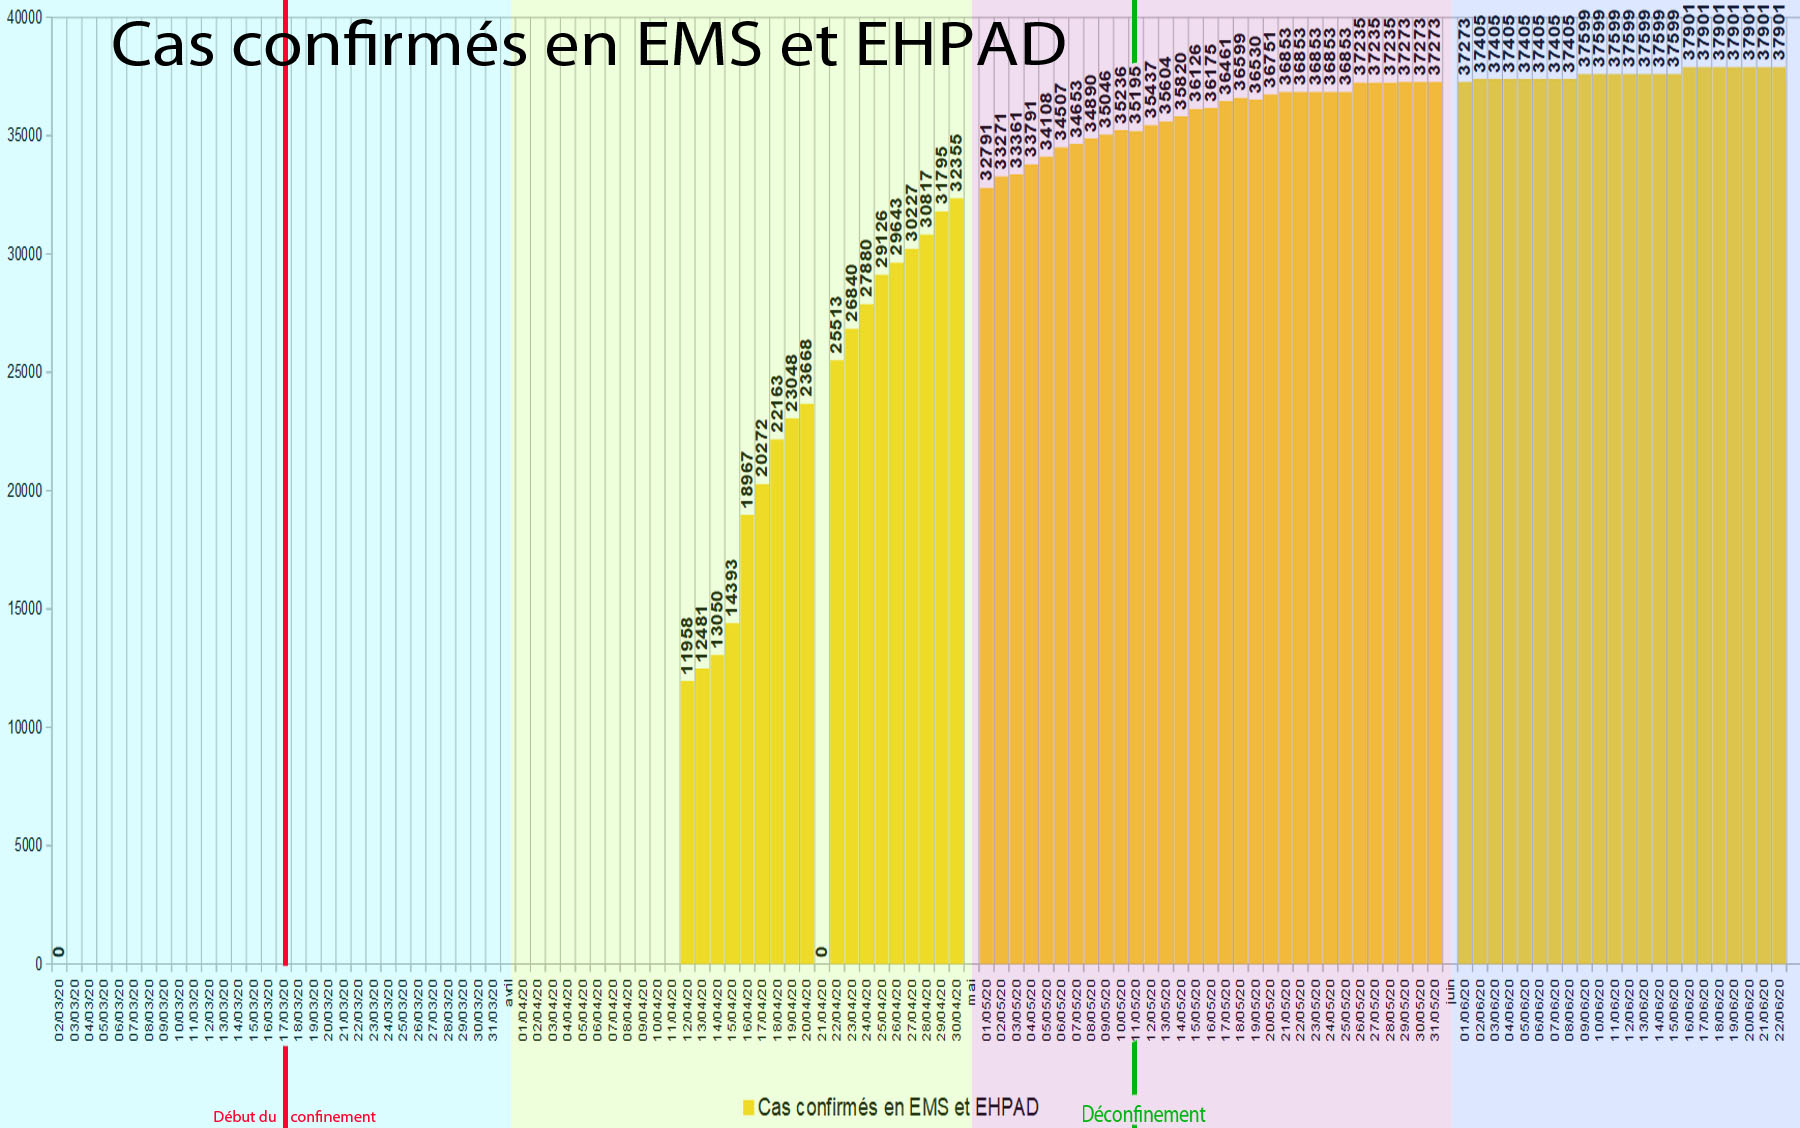 graphique7 Cas confirmés en EMS et EHPAD.jpg